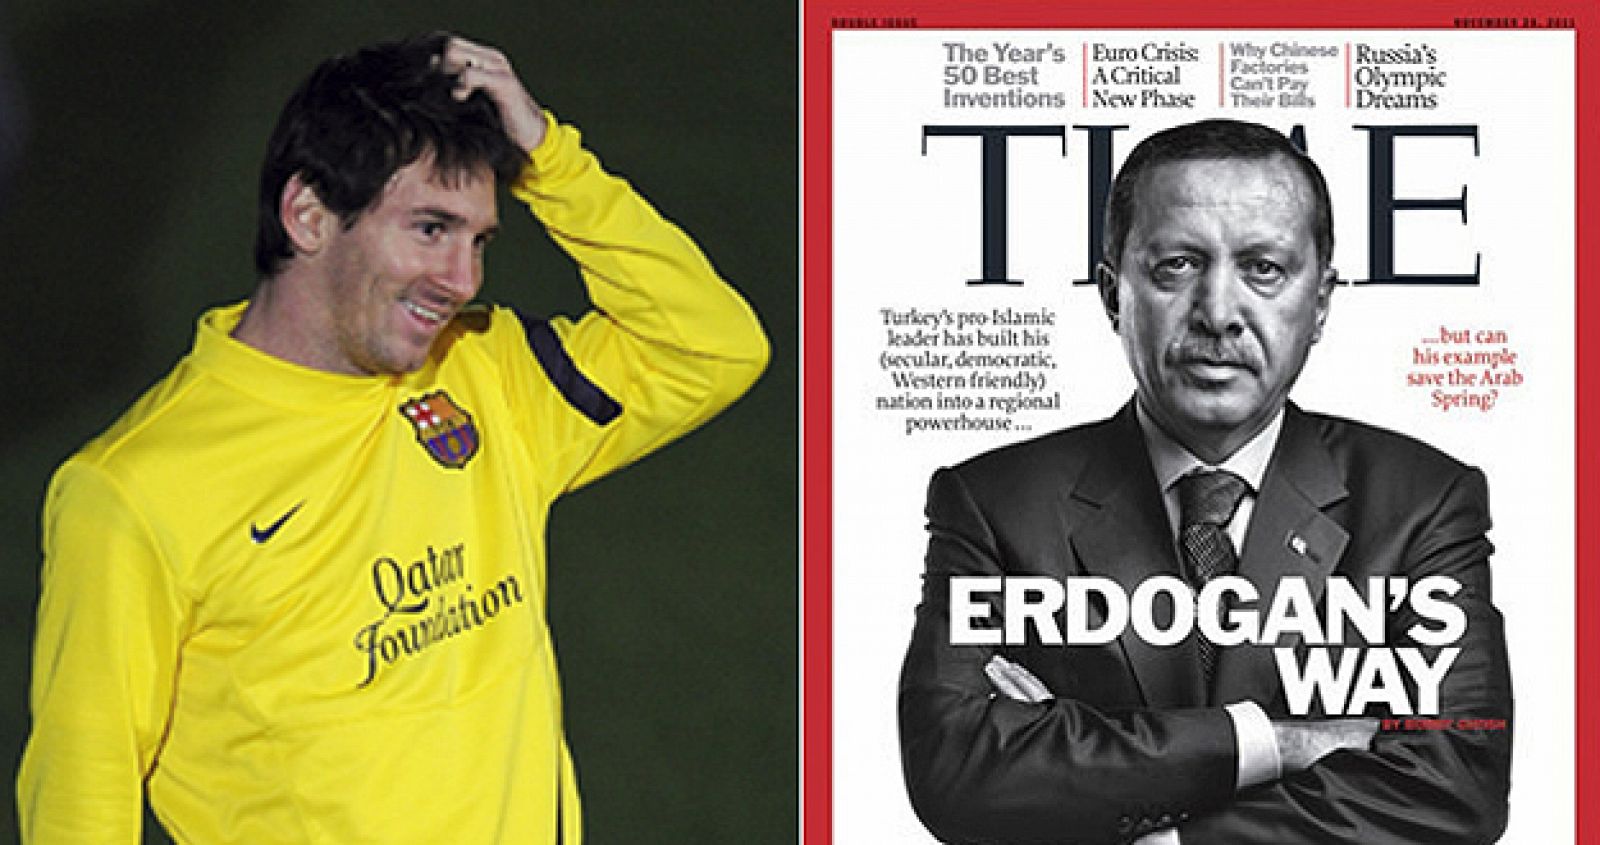 El jugador argentino del FC Barcelona, Lionel Messi, y la portada de la revista Times con Erdogan en la portada.